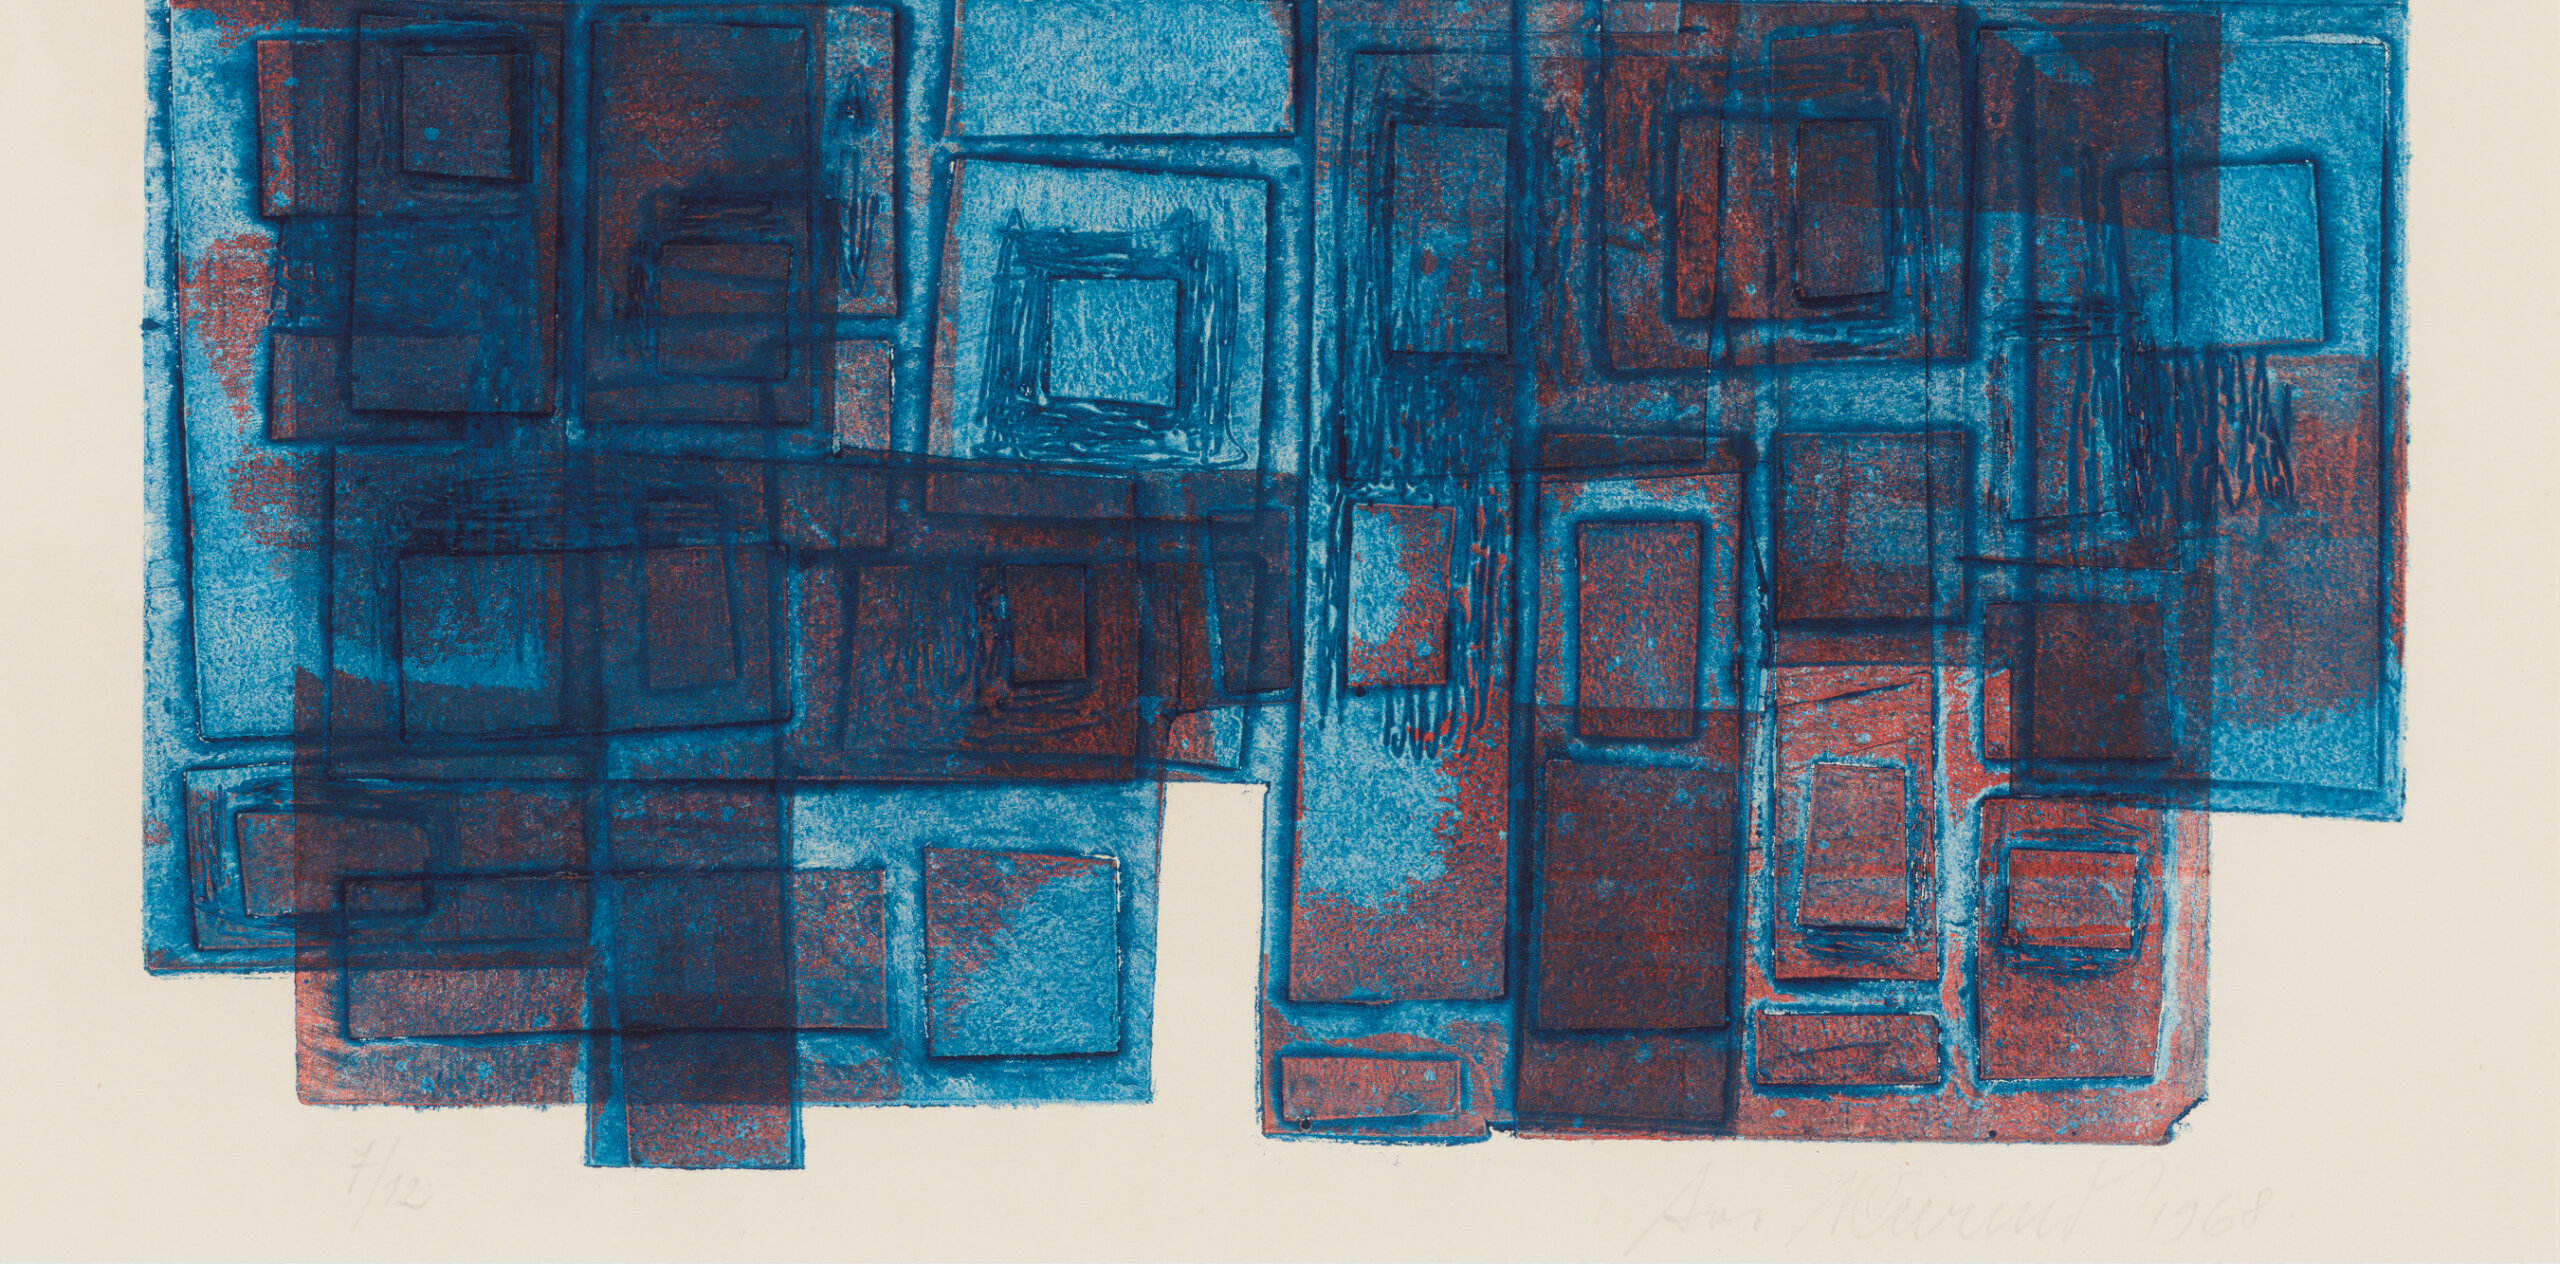 Avo Keerend “Kompositsioon sinisega”, 1968. 51 x 35 cm.